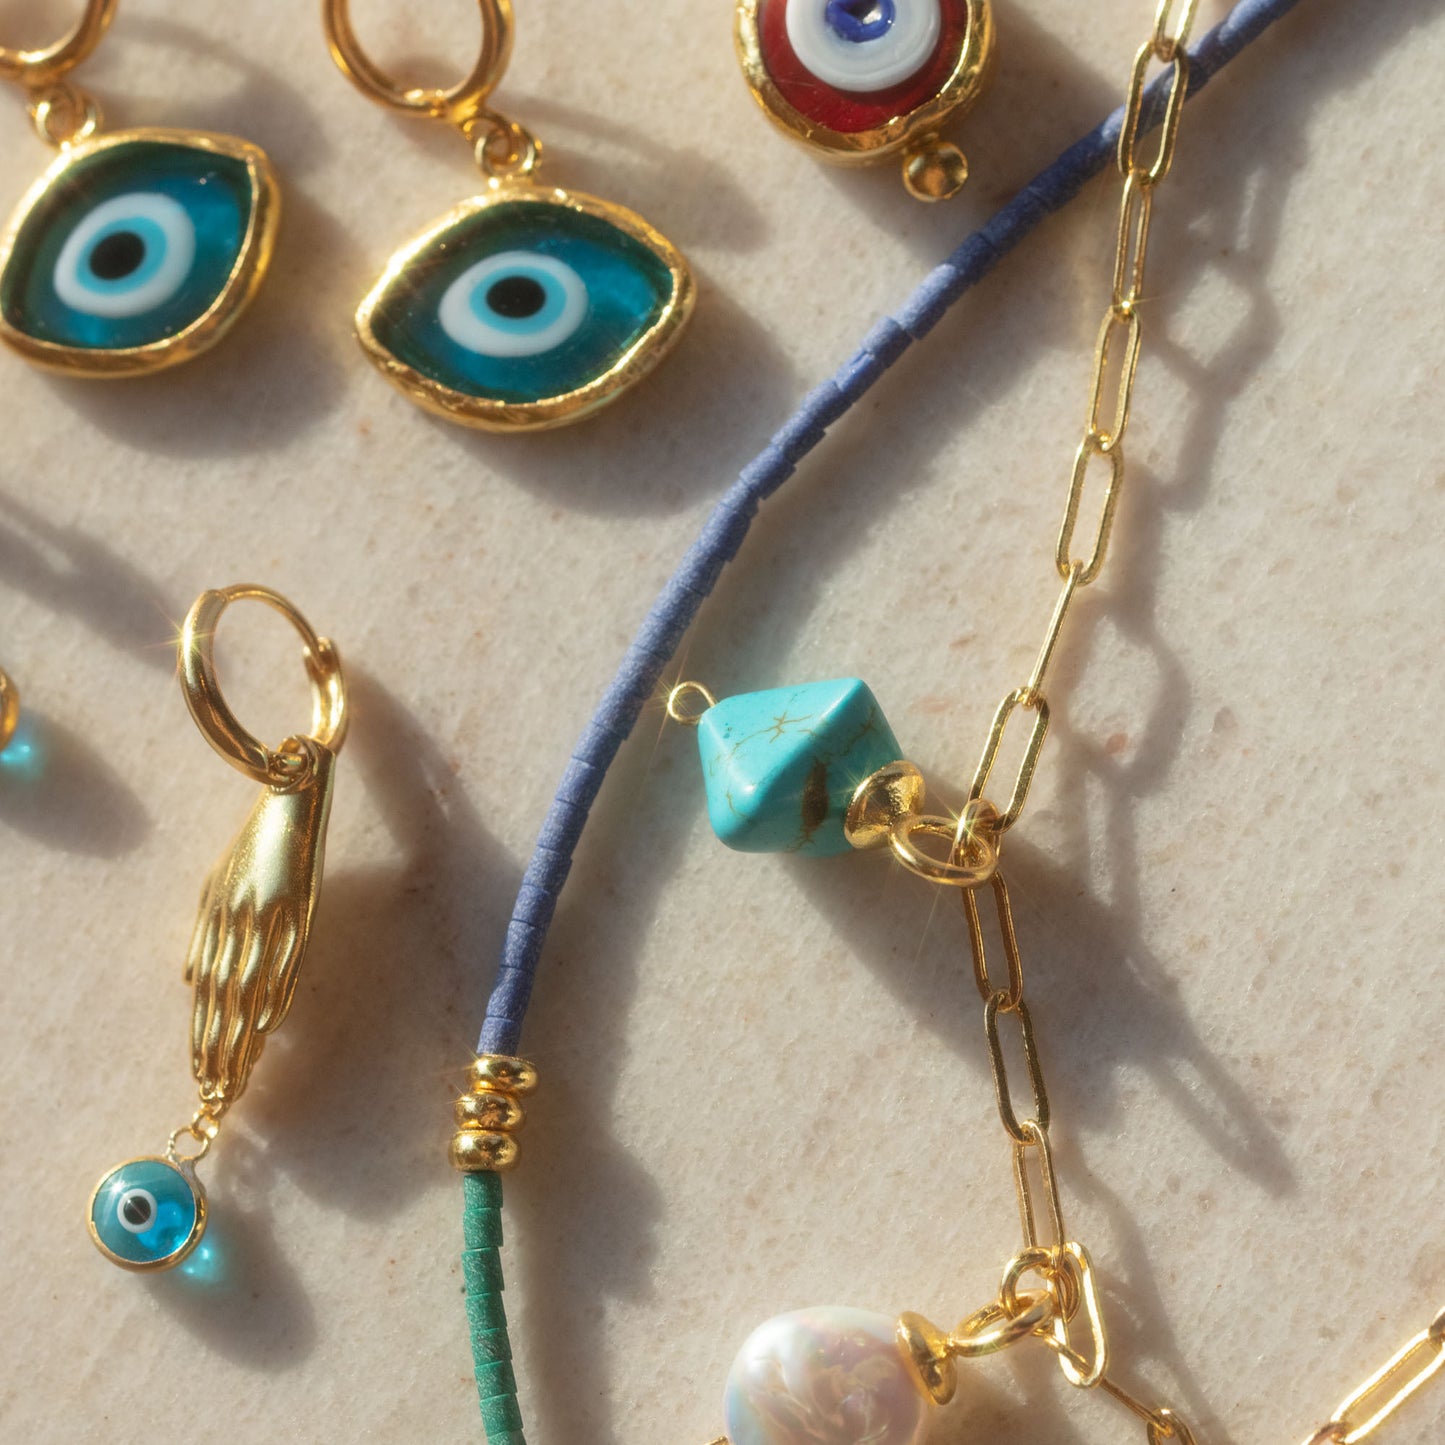 Cornicello Evil Eye Artisan Glass Pendant Necklace